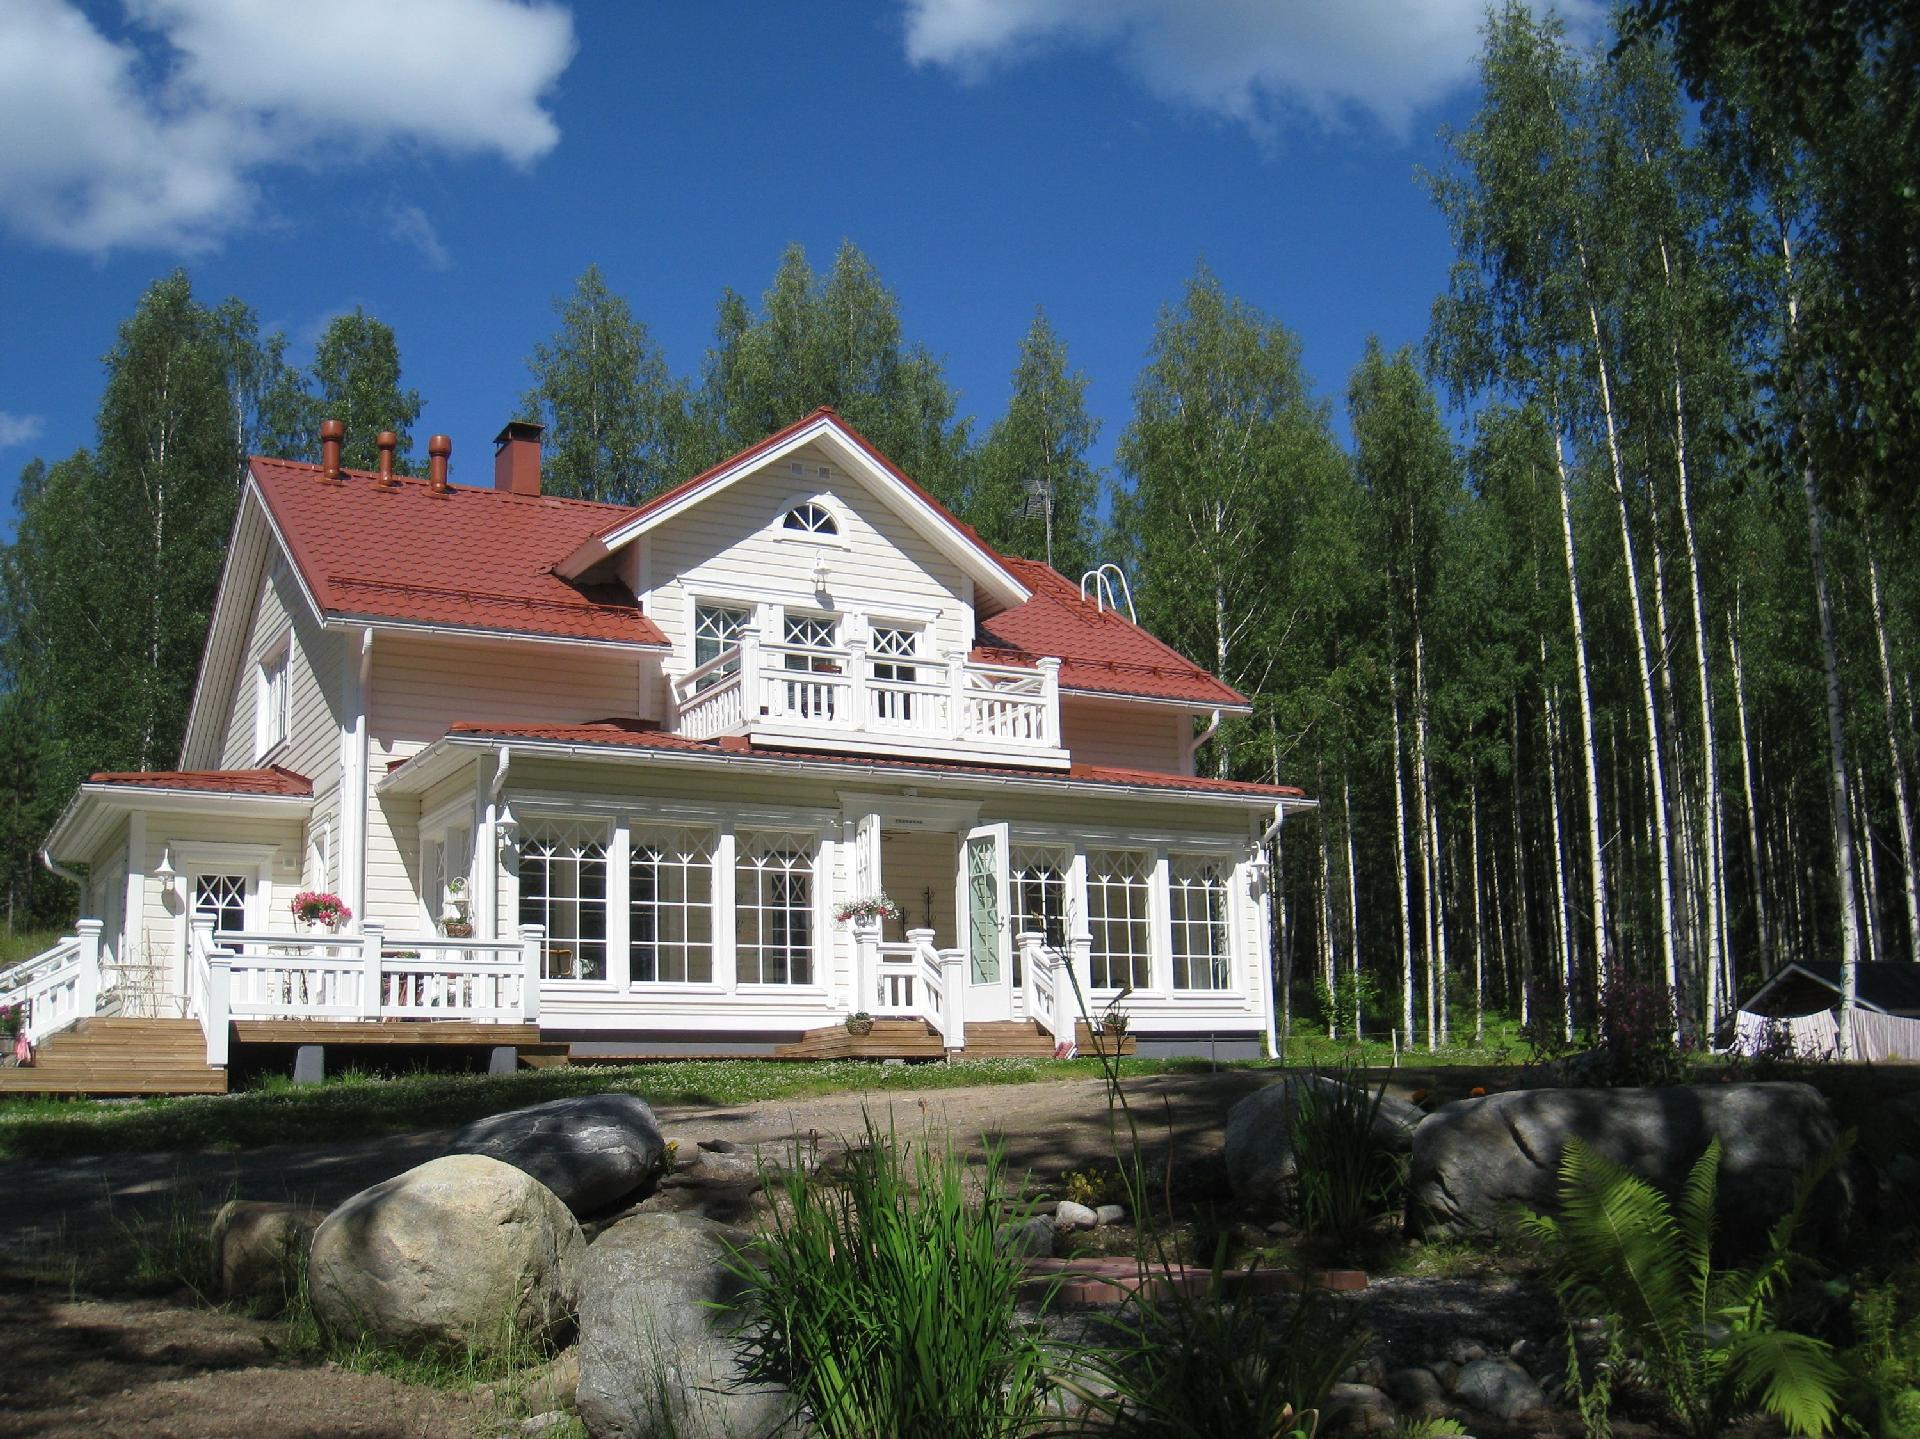 Ferienwohnung für 8 Personen ca. 100 m²  Ferienhaus in Finnland